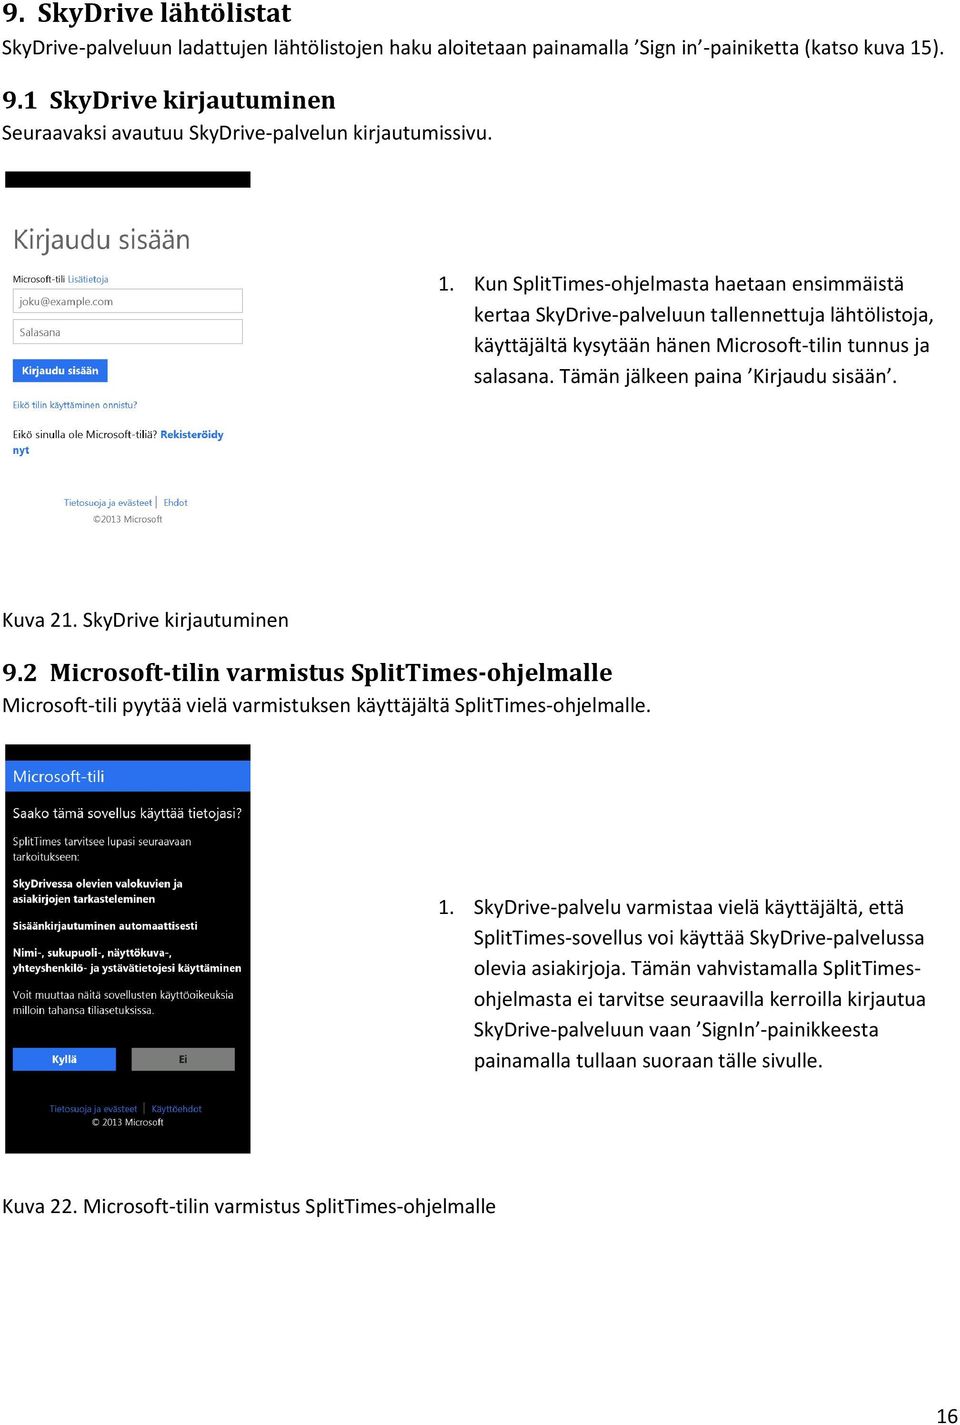 Kun SplitTimes-ohjelmasta haetaan ensimmäistä kertaa SkyDrive-palveluun tallennettuja lähtölistoja, käyttäjältä kysytään hänen Microsoft-tilin tunnus ja salasana. Tämän jälkeen paina Kirjaudu sisään.